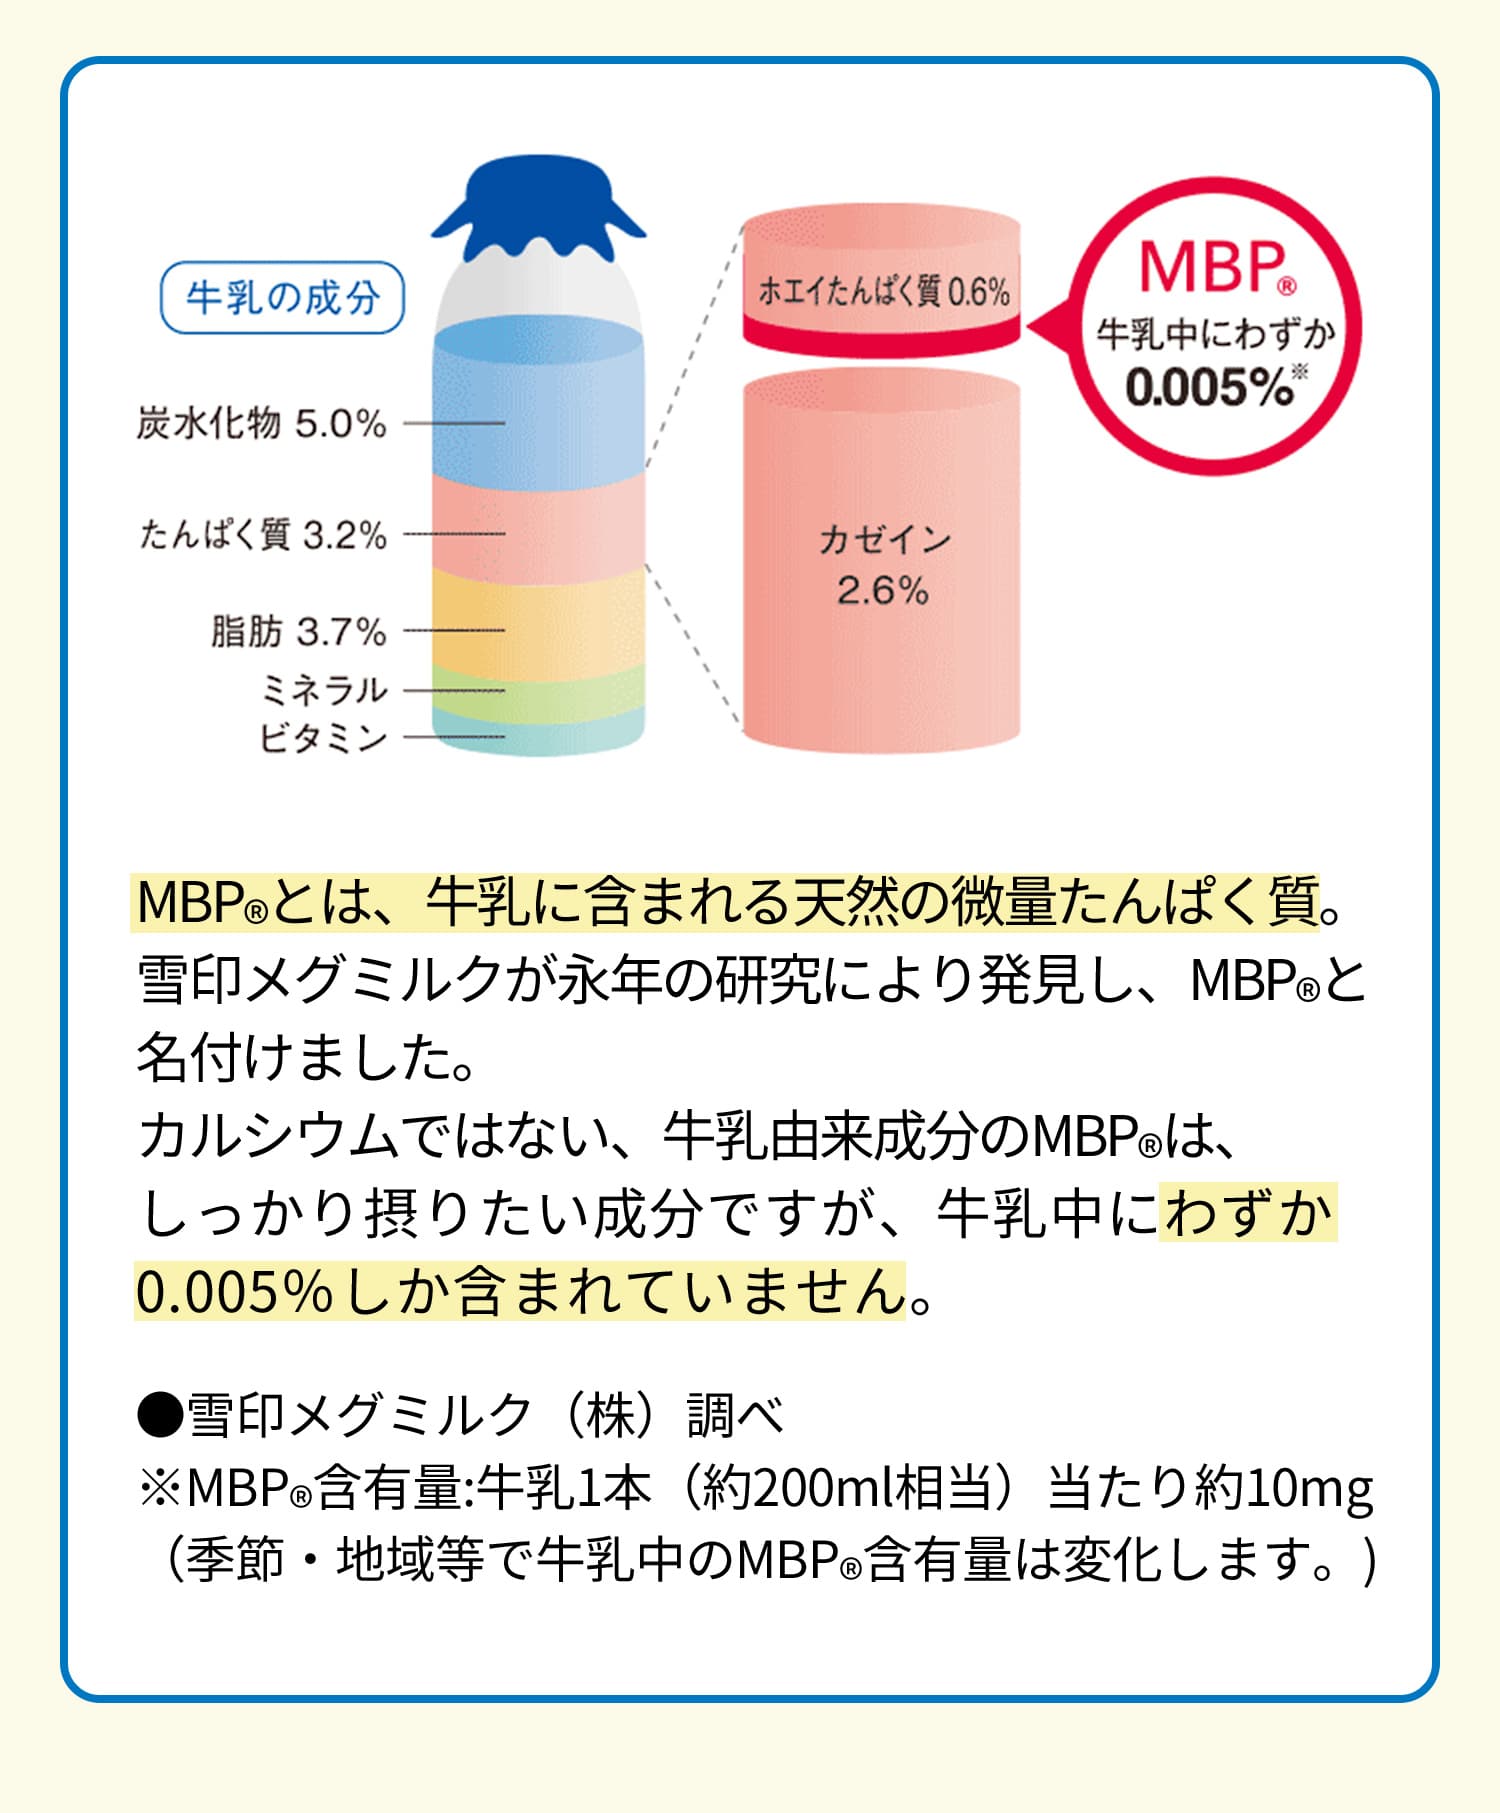 MBP(R)とは、牛乳に含まれる天然の微量たんぱく質。雪印メグミルクが永年の研究により発見し、MBP(R)と名付けました。カルシウムではない、牛乳由来成分のMBP(R)は、しっかり摂りたい成分ですが、牛乳中にわずか0.005％しか含まれていません。